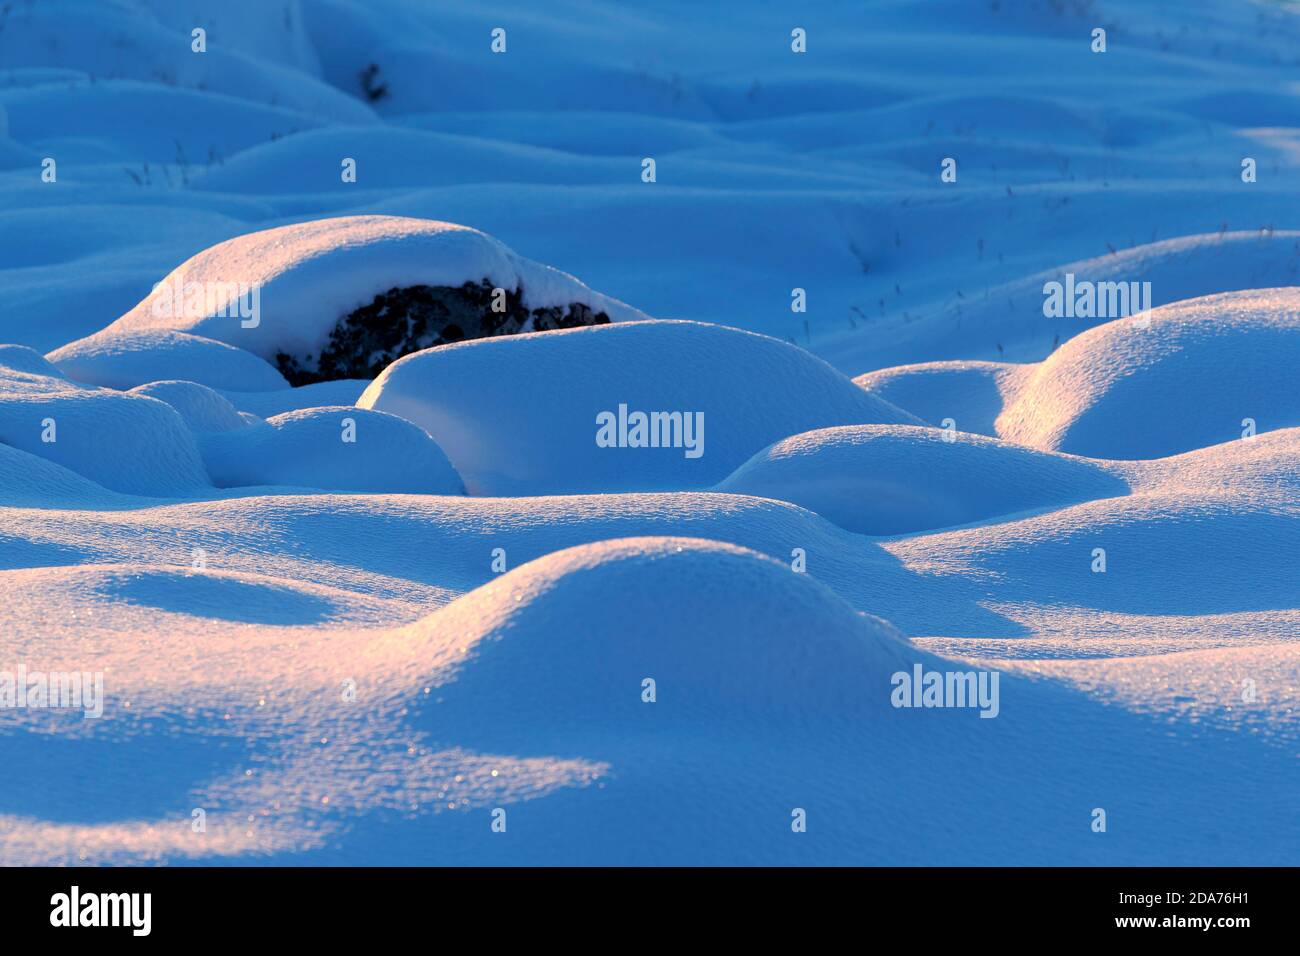 Dettaglio in primo piano della neve fresca in polvere e dei suoi motivi con piccole colline. I fiocchi di neve brillano nella luce. Ilulissat, Baia di Disko, Groenlandia. Foto Stock